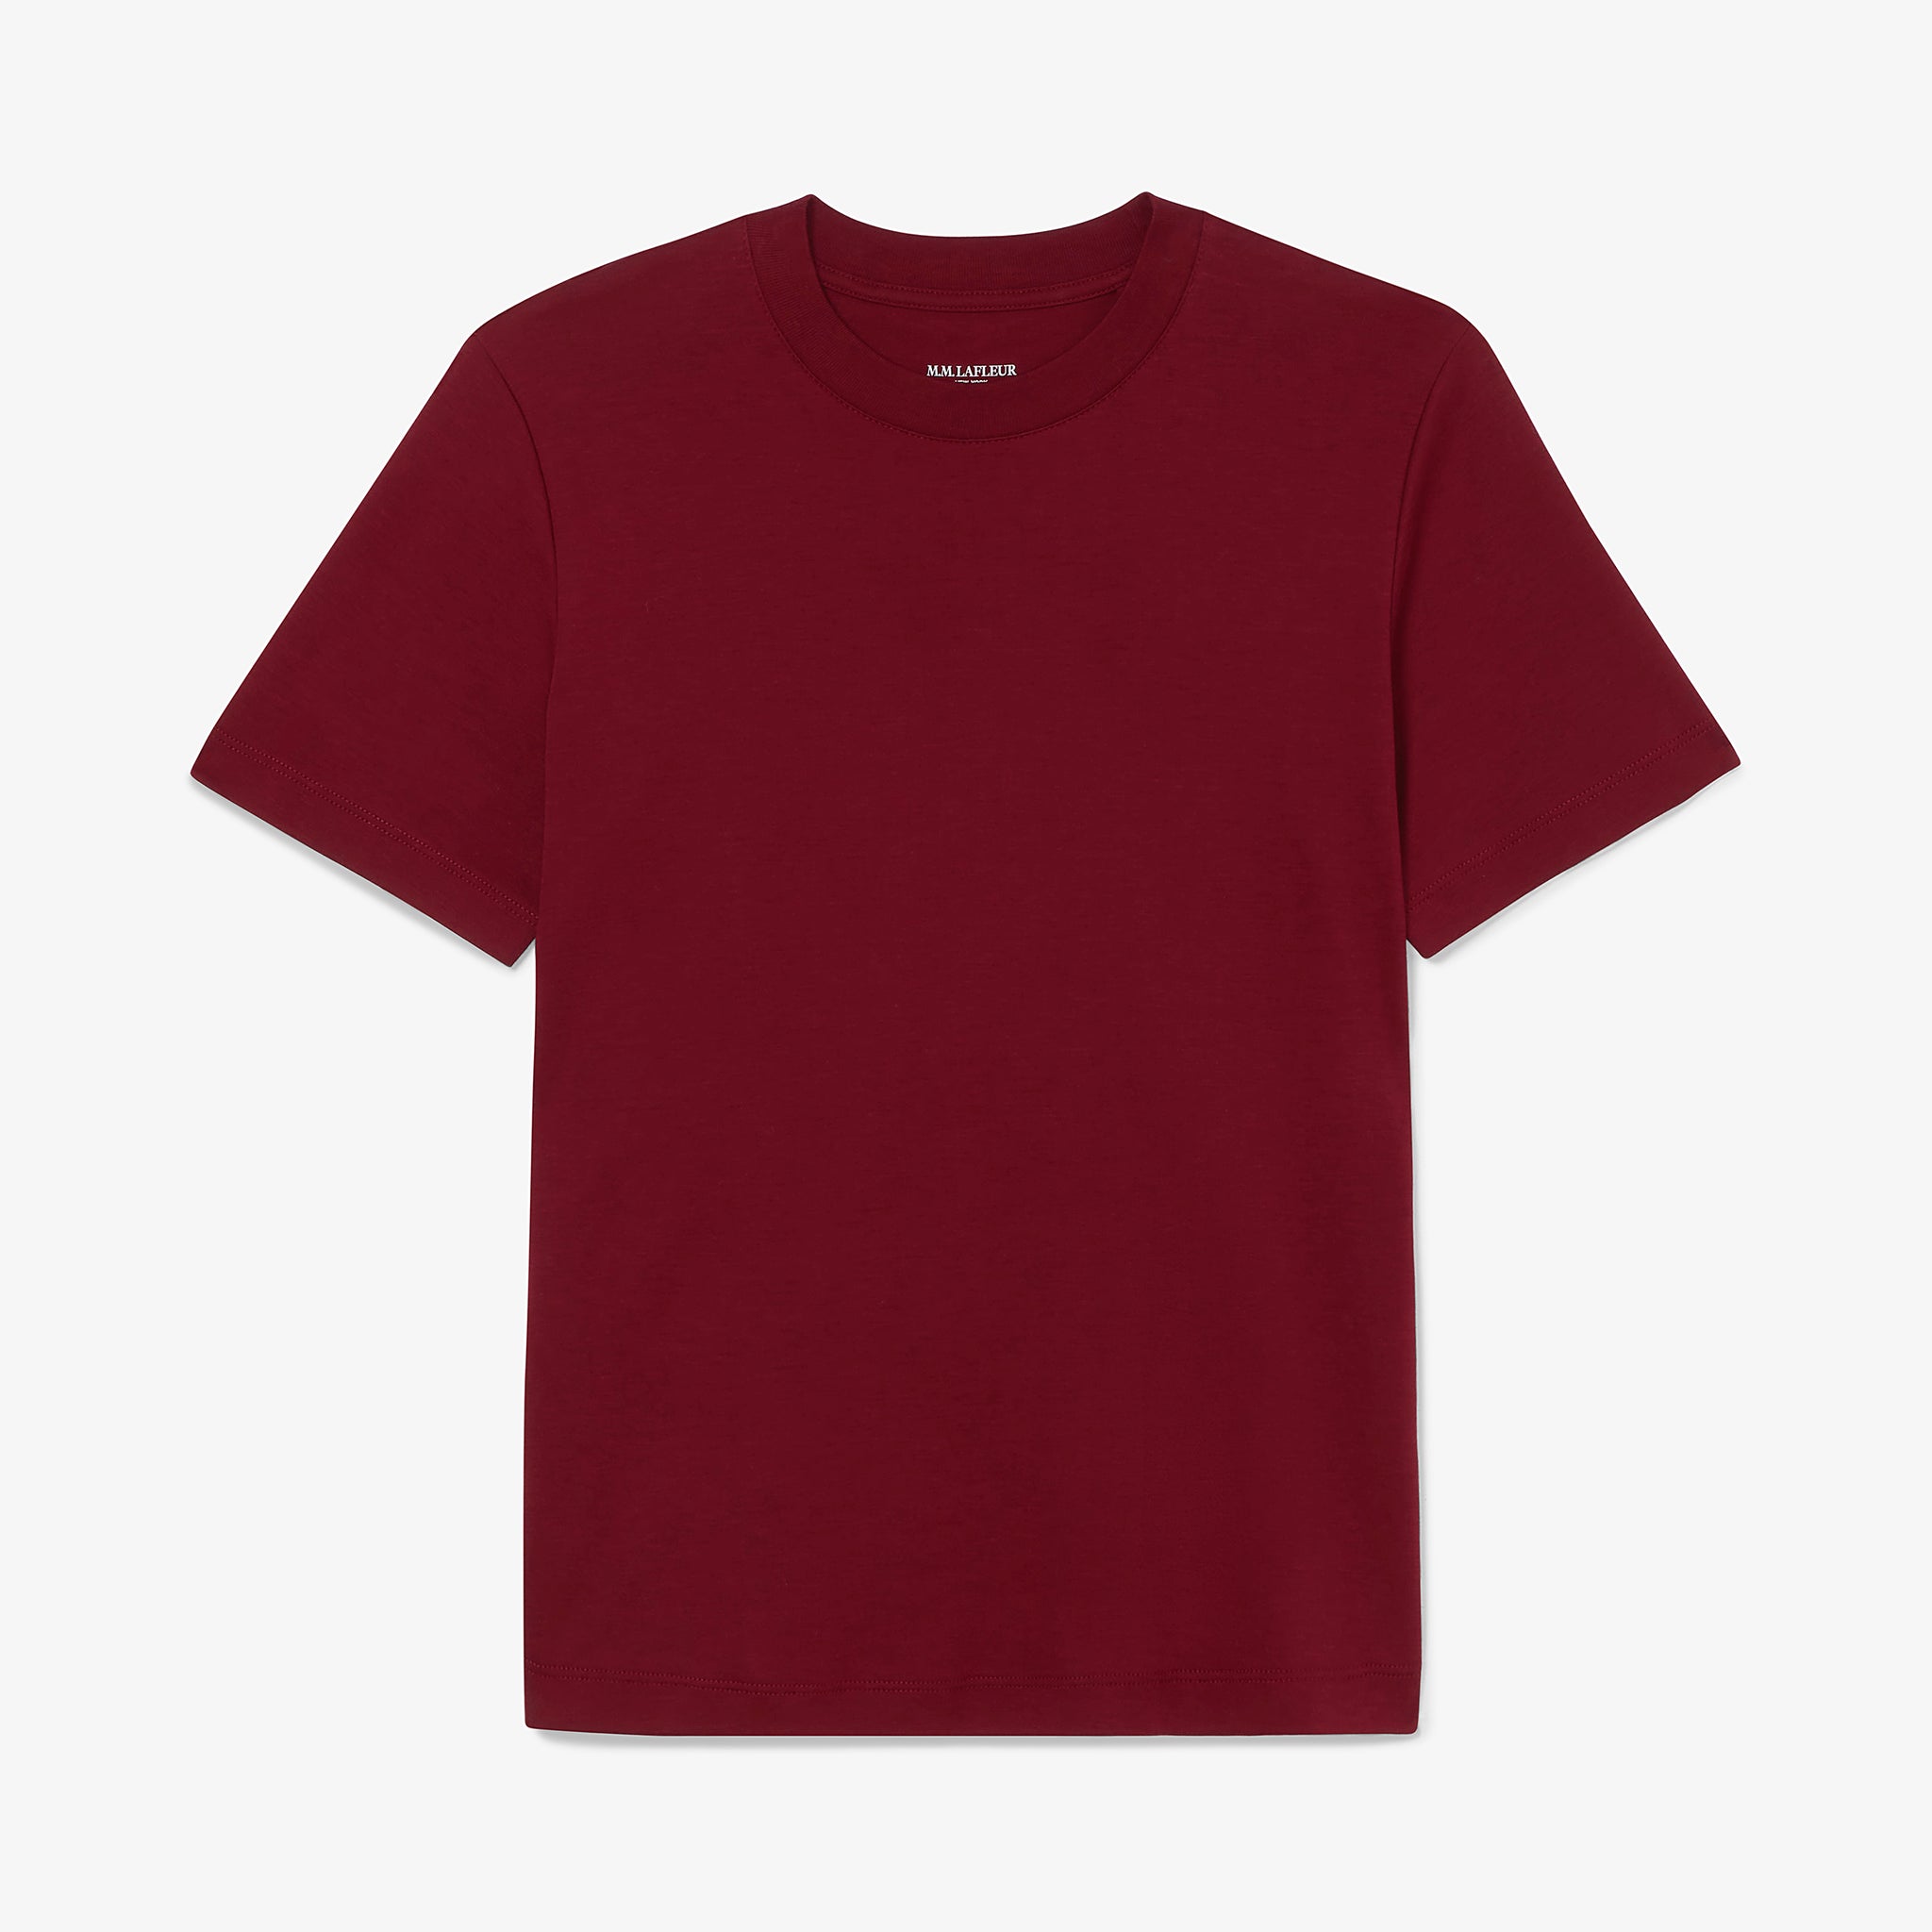 Packshot image of the leslie tshirt in maroon